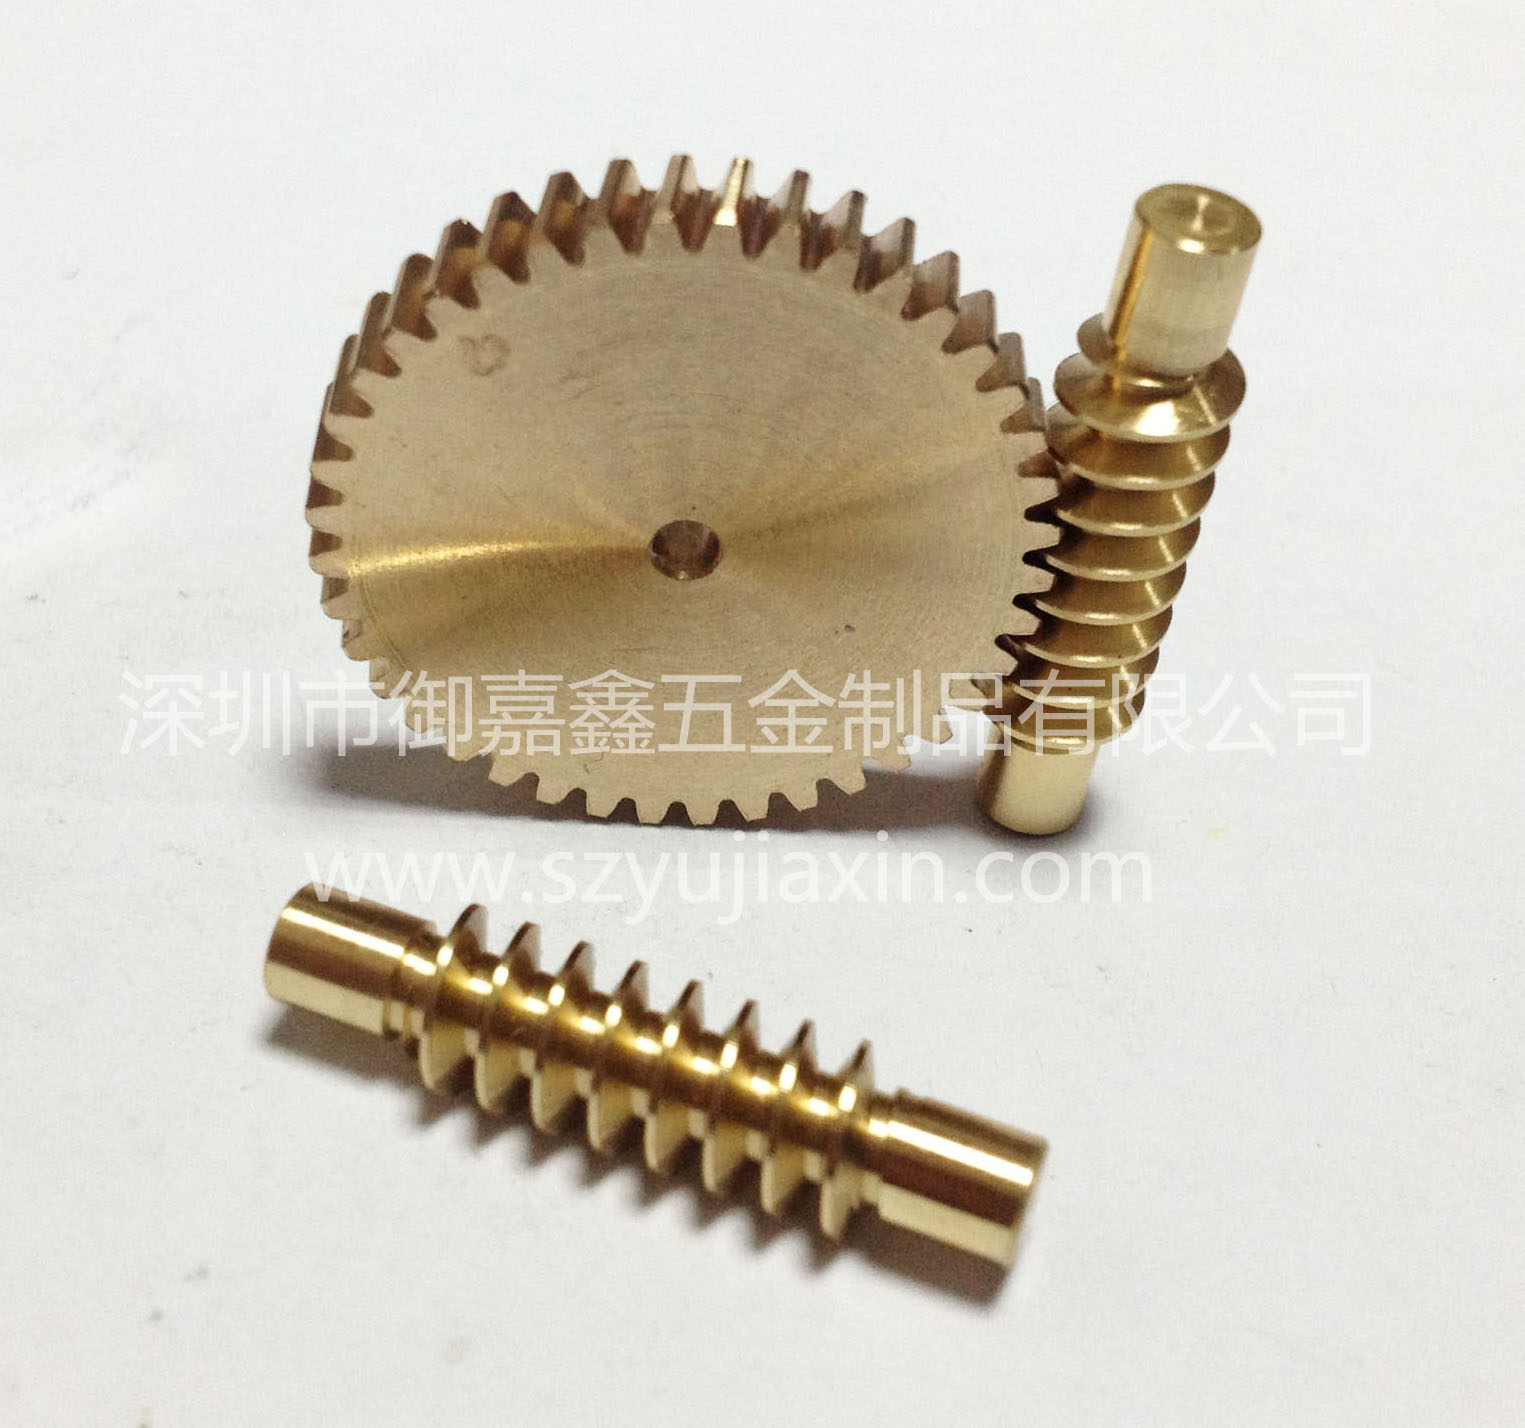 Schneckengetriebe | Präzisionsbearbeitung | Yujiaxin | Drehbearbeitung | CNC-Drehbearbeitung | mehrköpfiger Wurm | Multi-Thread-Wurm